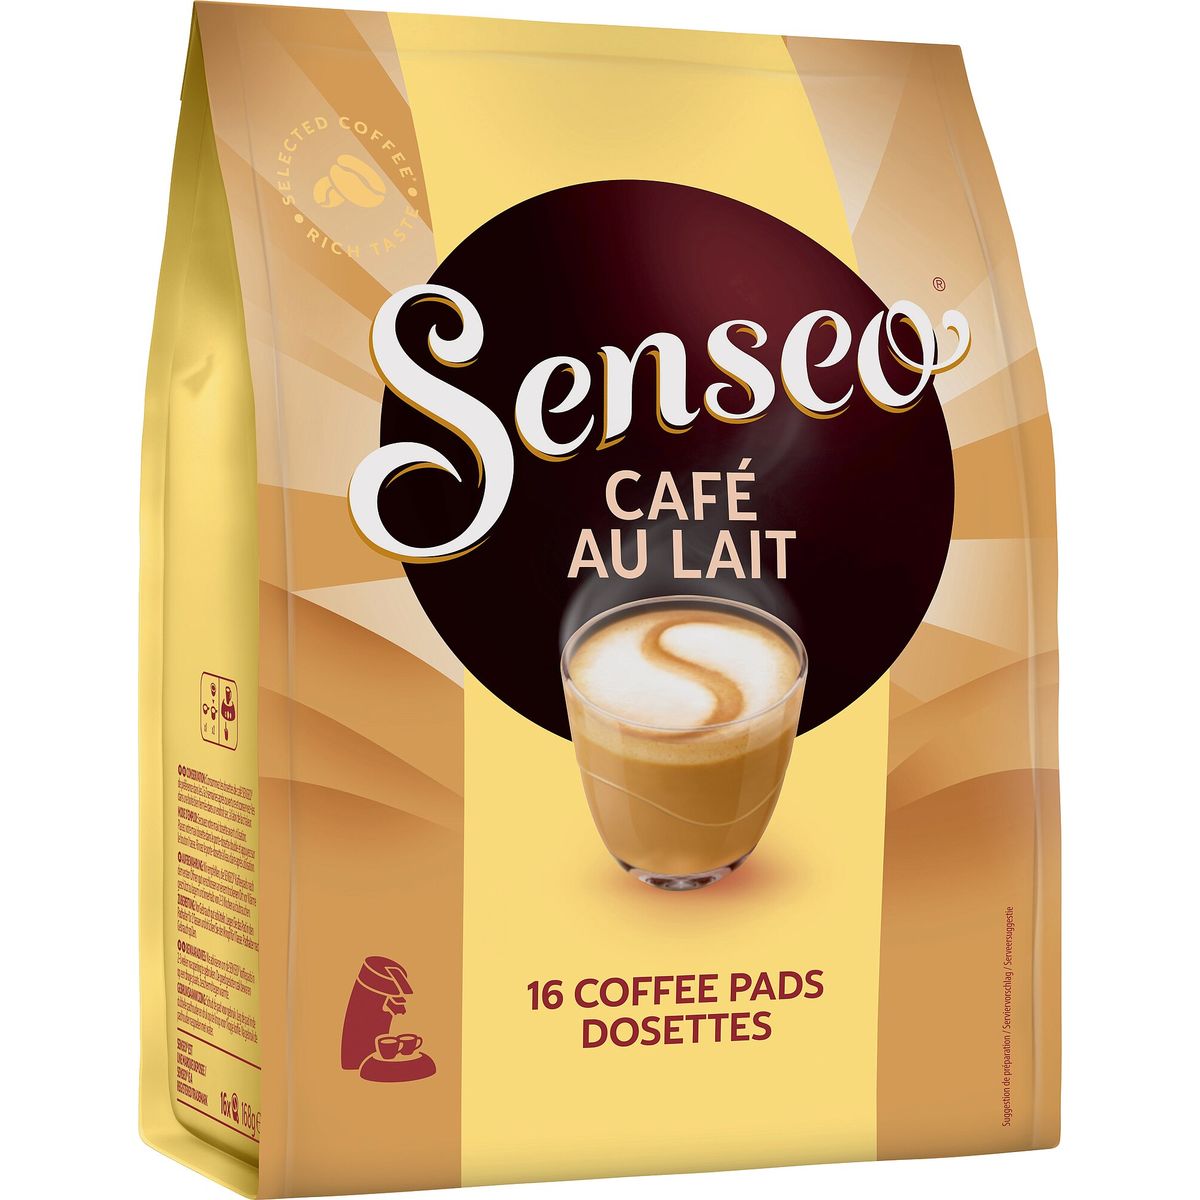 Senseo Café au Lait 16 Coffee Pads 168 g